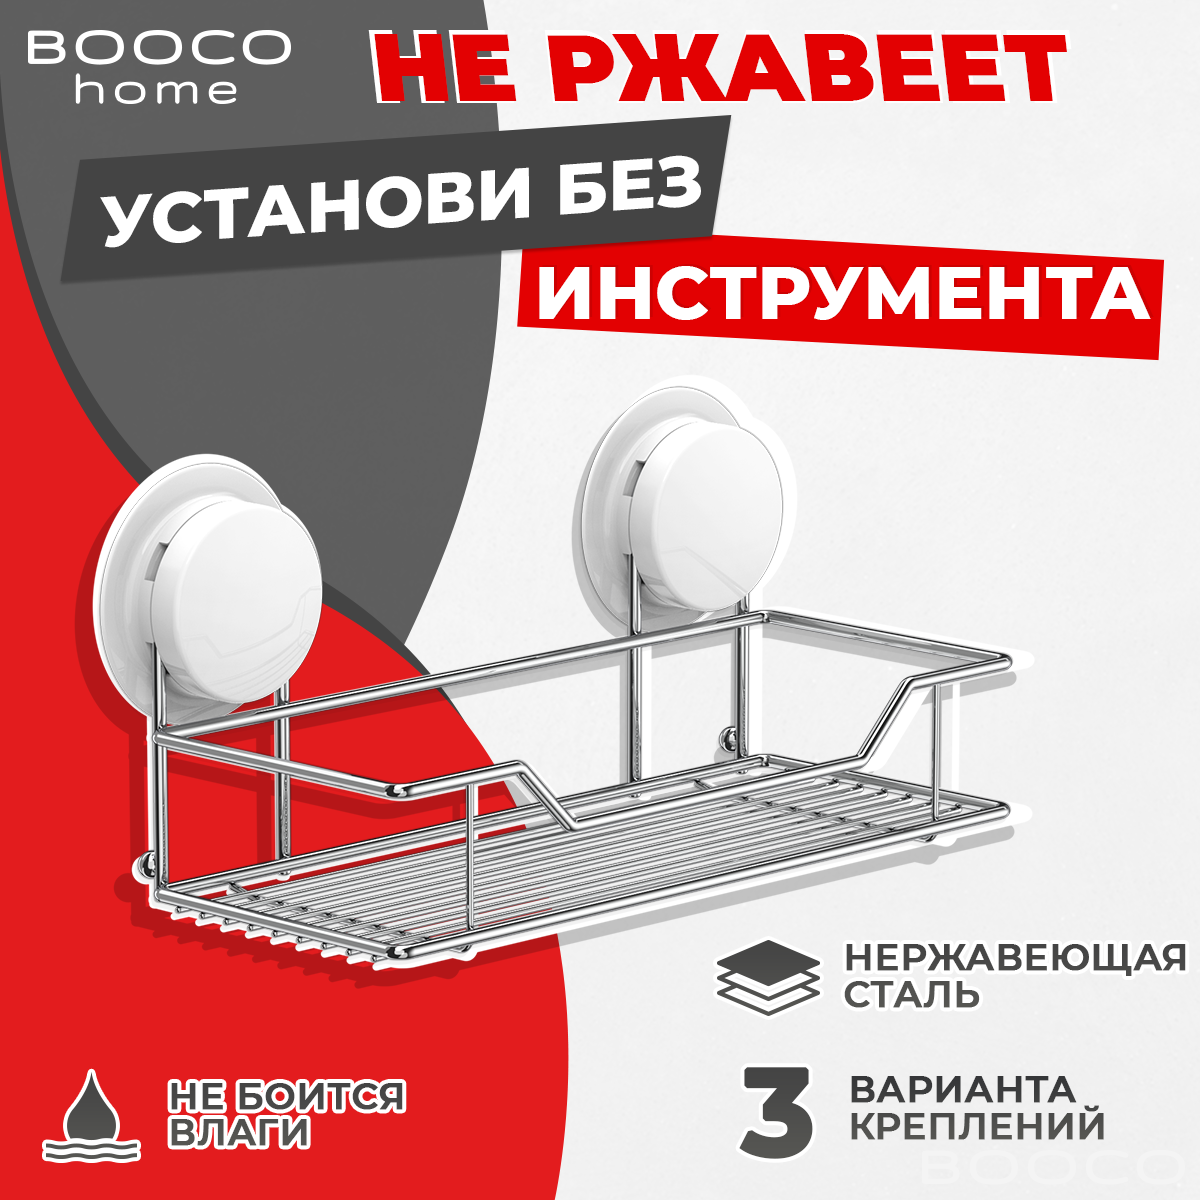 Полка для ванной комнаты, корзина BOOCO - нержавеющая сталь, полированная, белая - 1шт. Установка без инструмента. 250(Д)х110(Г)х45(В)